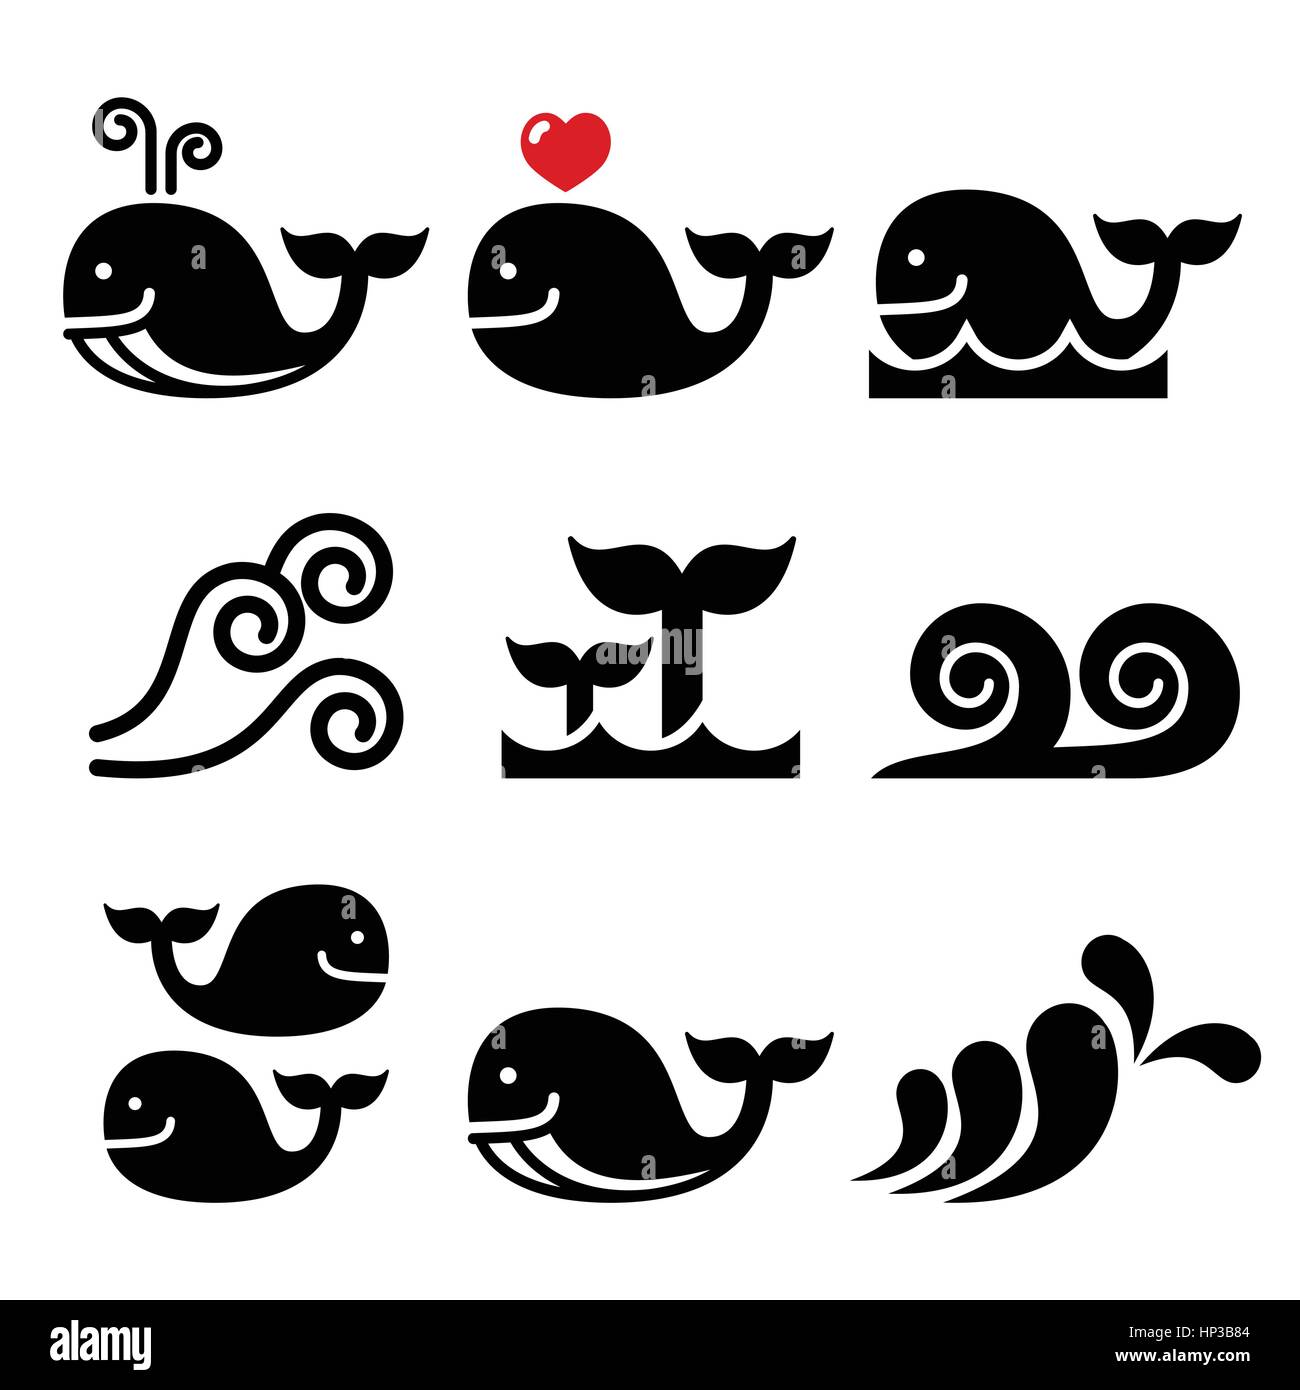 La mer, les baleines ou les vagues de l'océan icons set.Vector icons set isolated on white - Faune Illustration de Vecteur